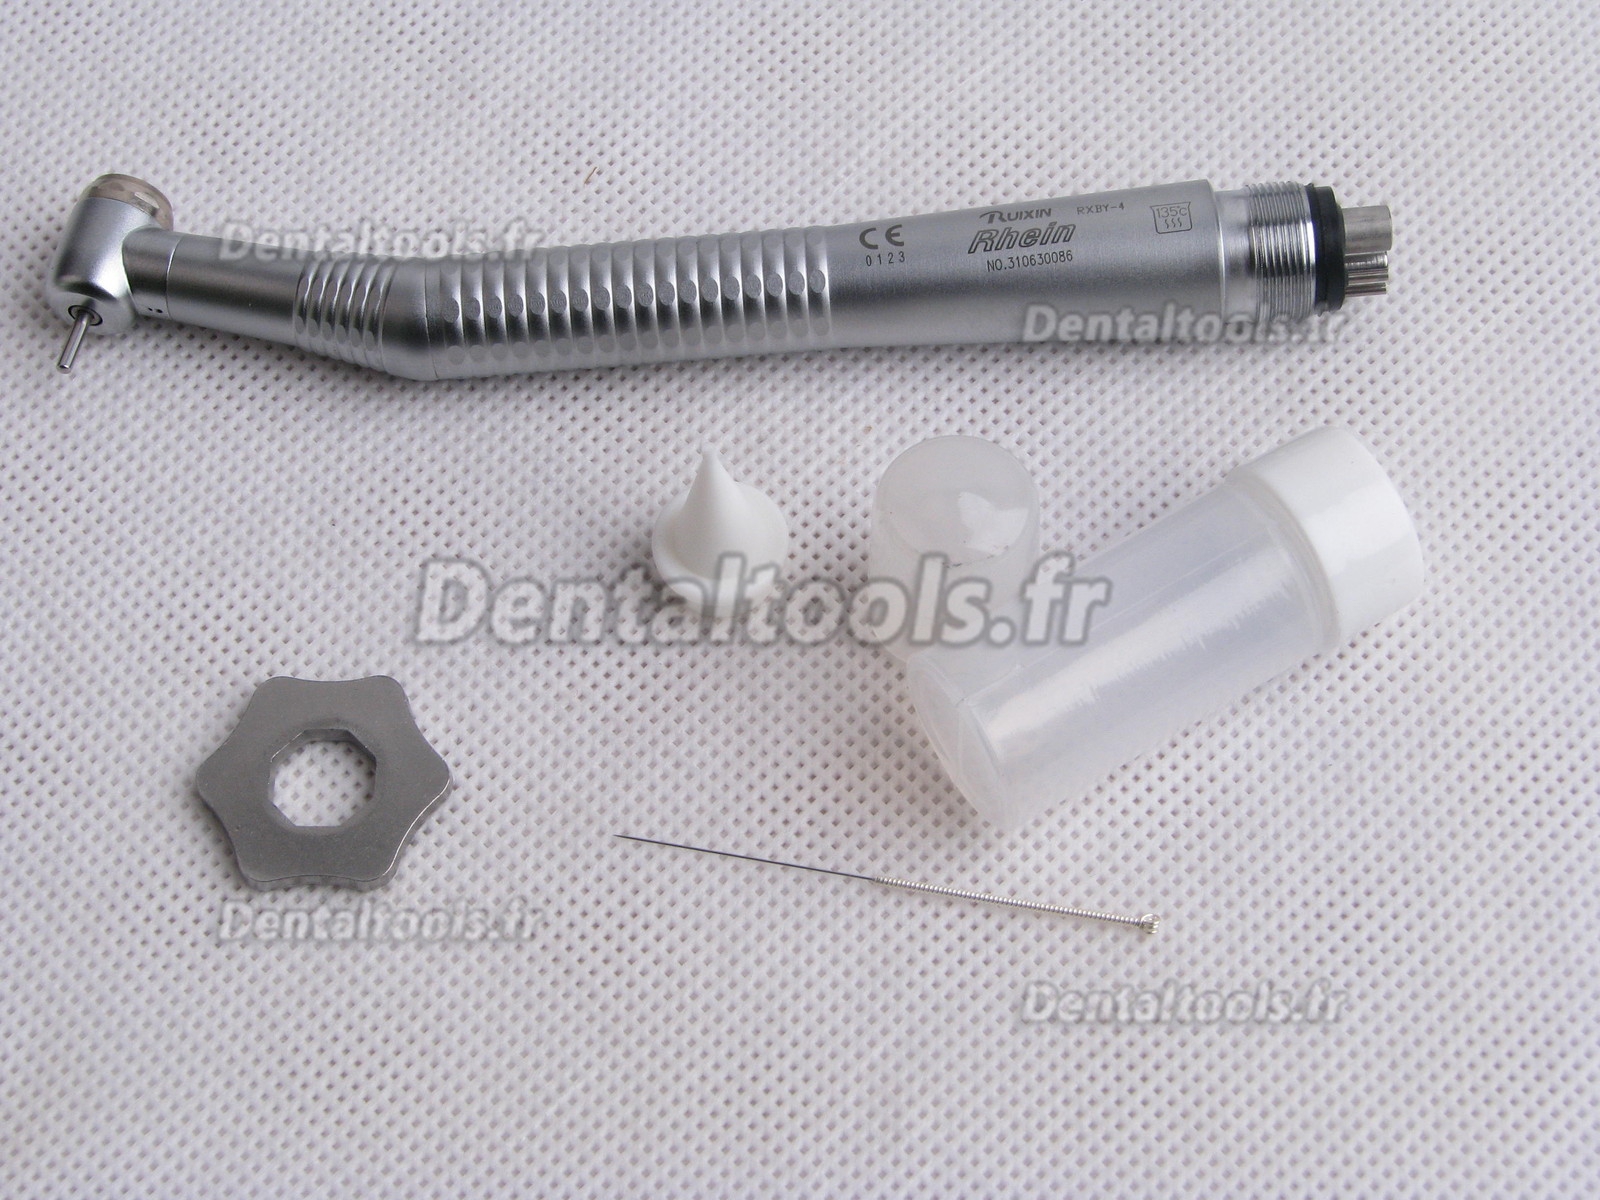 Tosi® TX-114 Turbine dentaire bouton poussoir avec coupleur